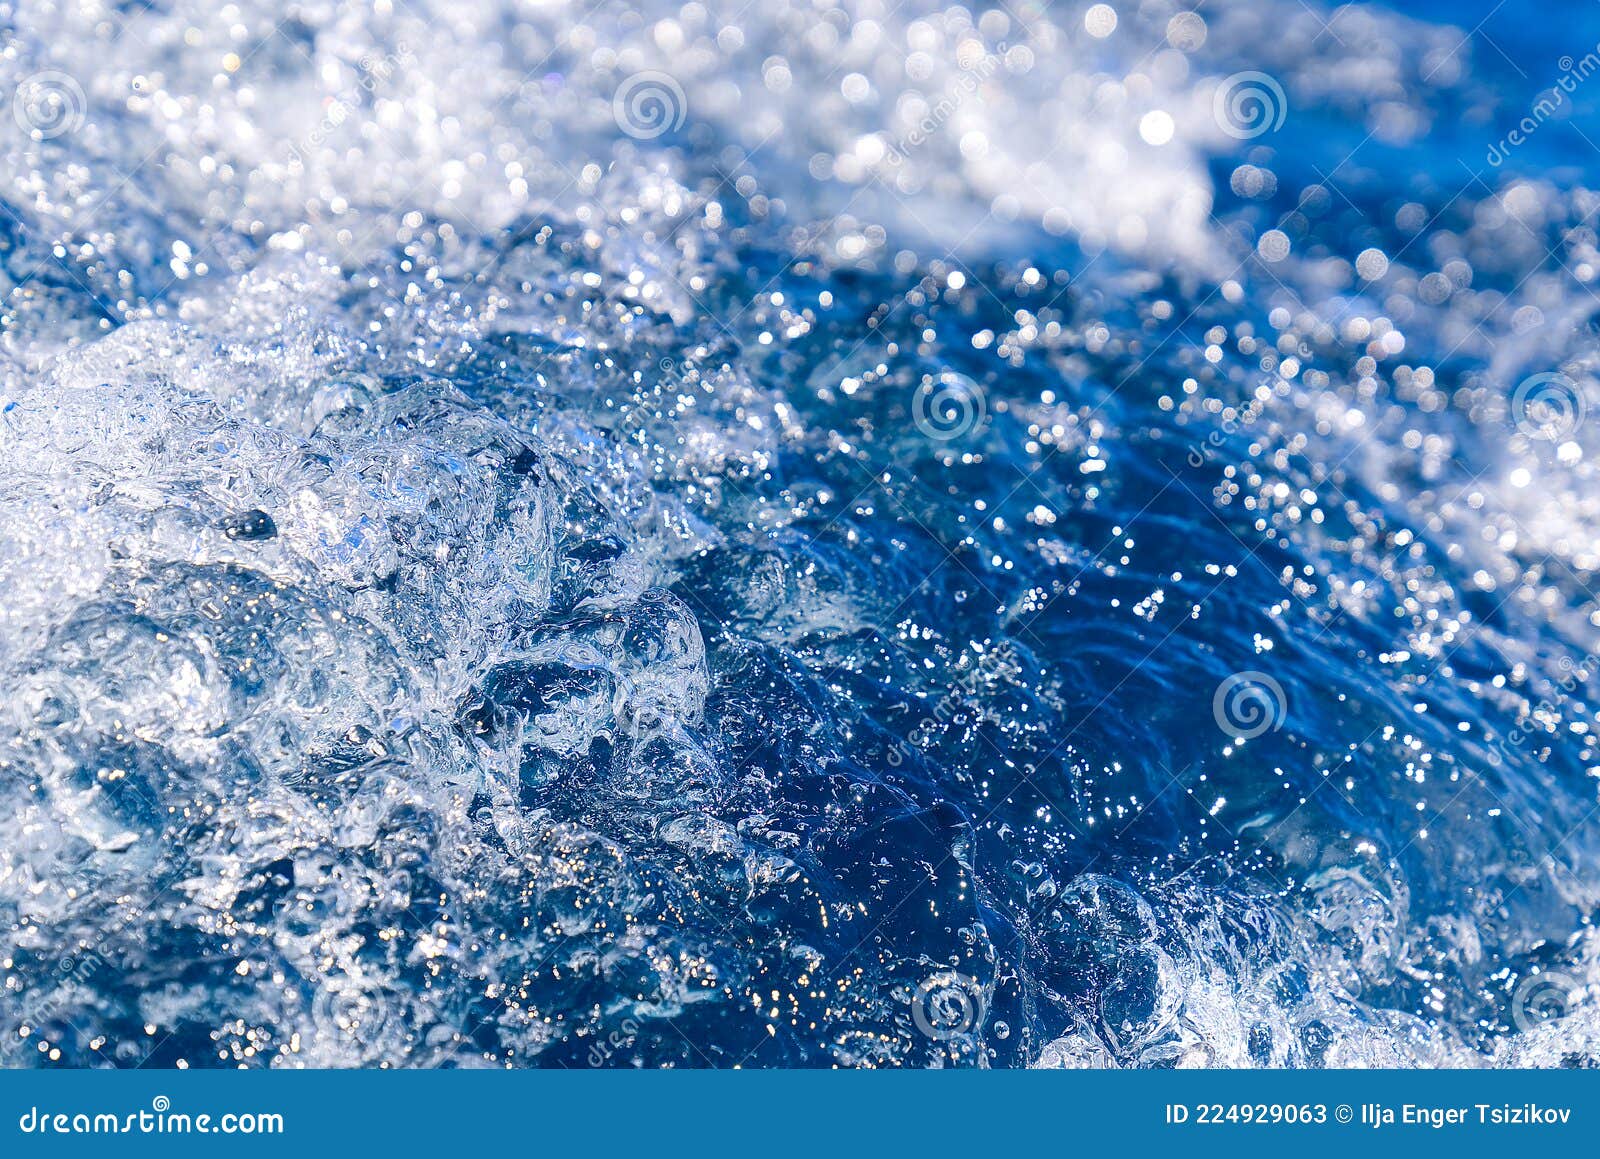 蓝色海水图片素材-编号12100685-图行天下